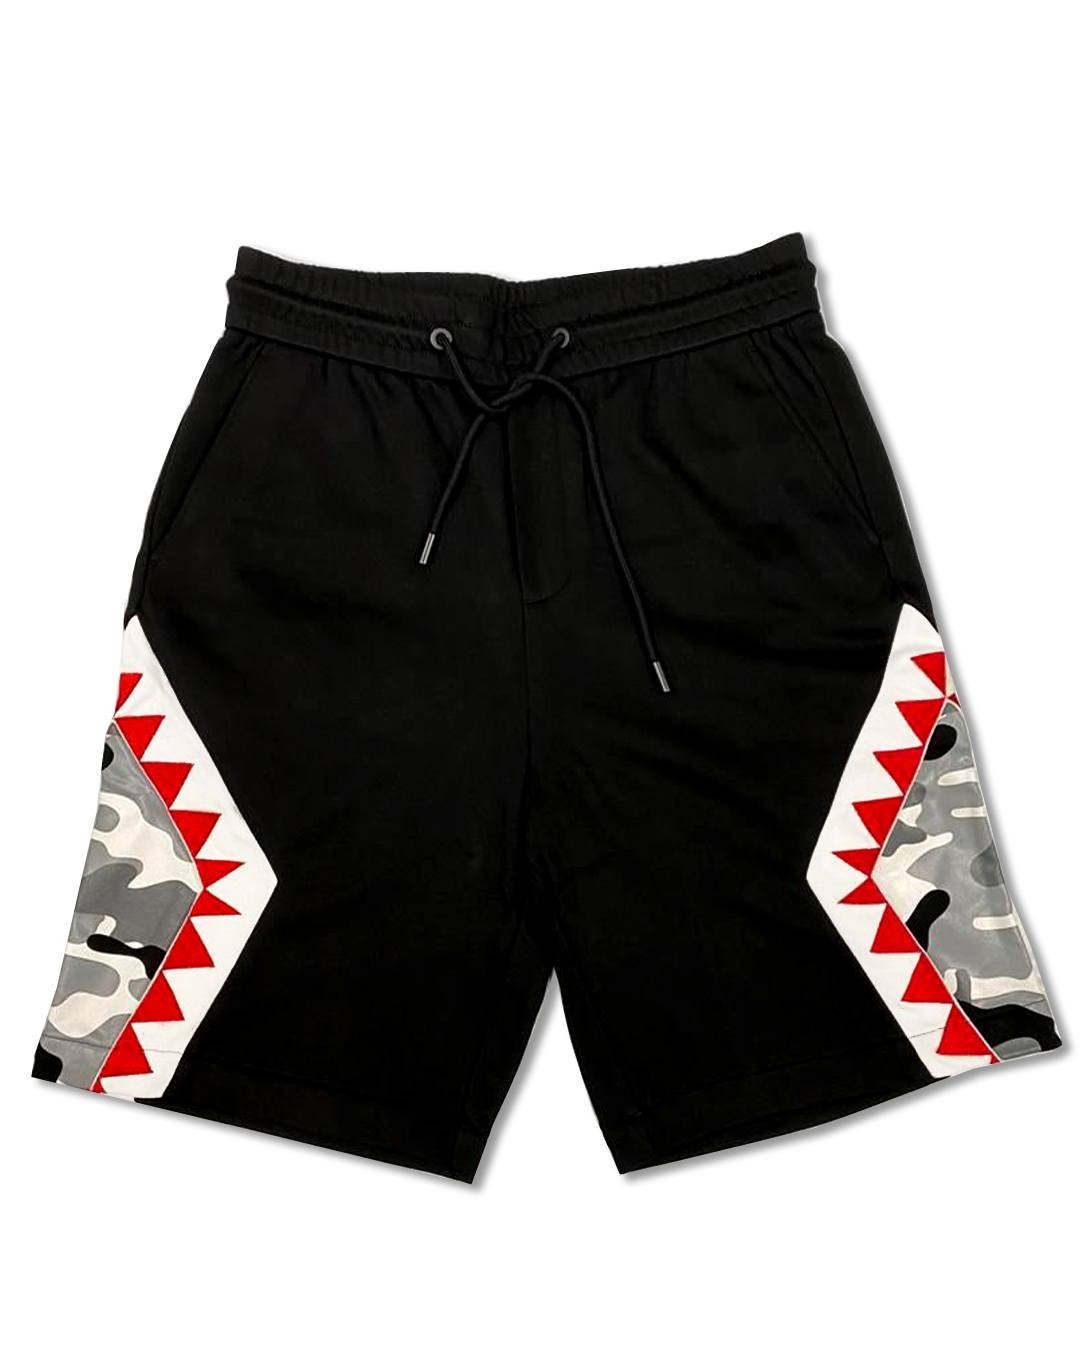 Discount | Shark Panamera Shorts Sprayground Sale - Discount | Shark Panamera Shorts Sprayground Sale-31